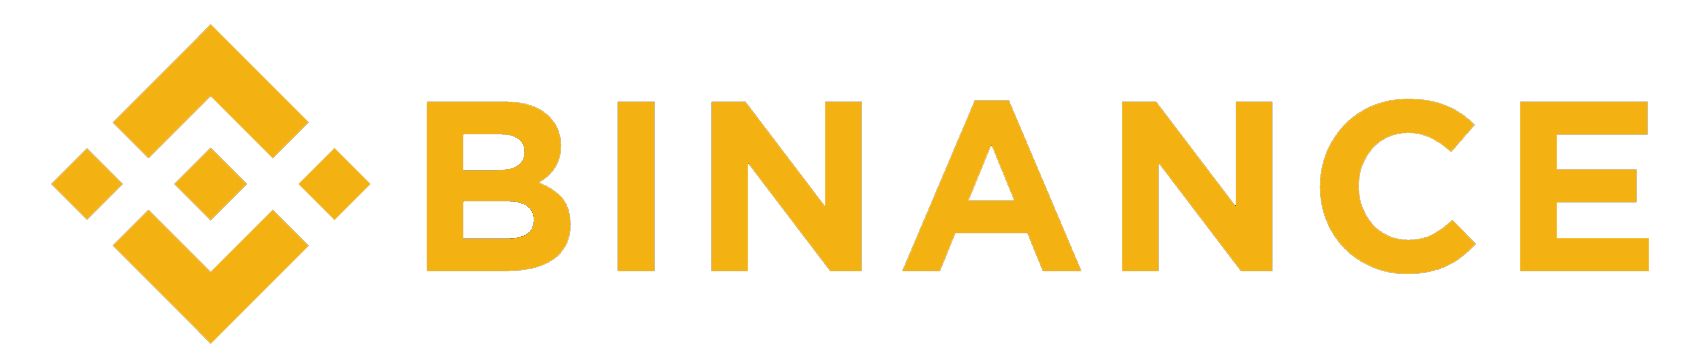 Логотип биржи Binance